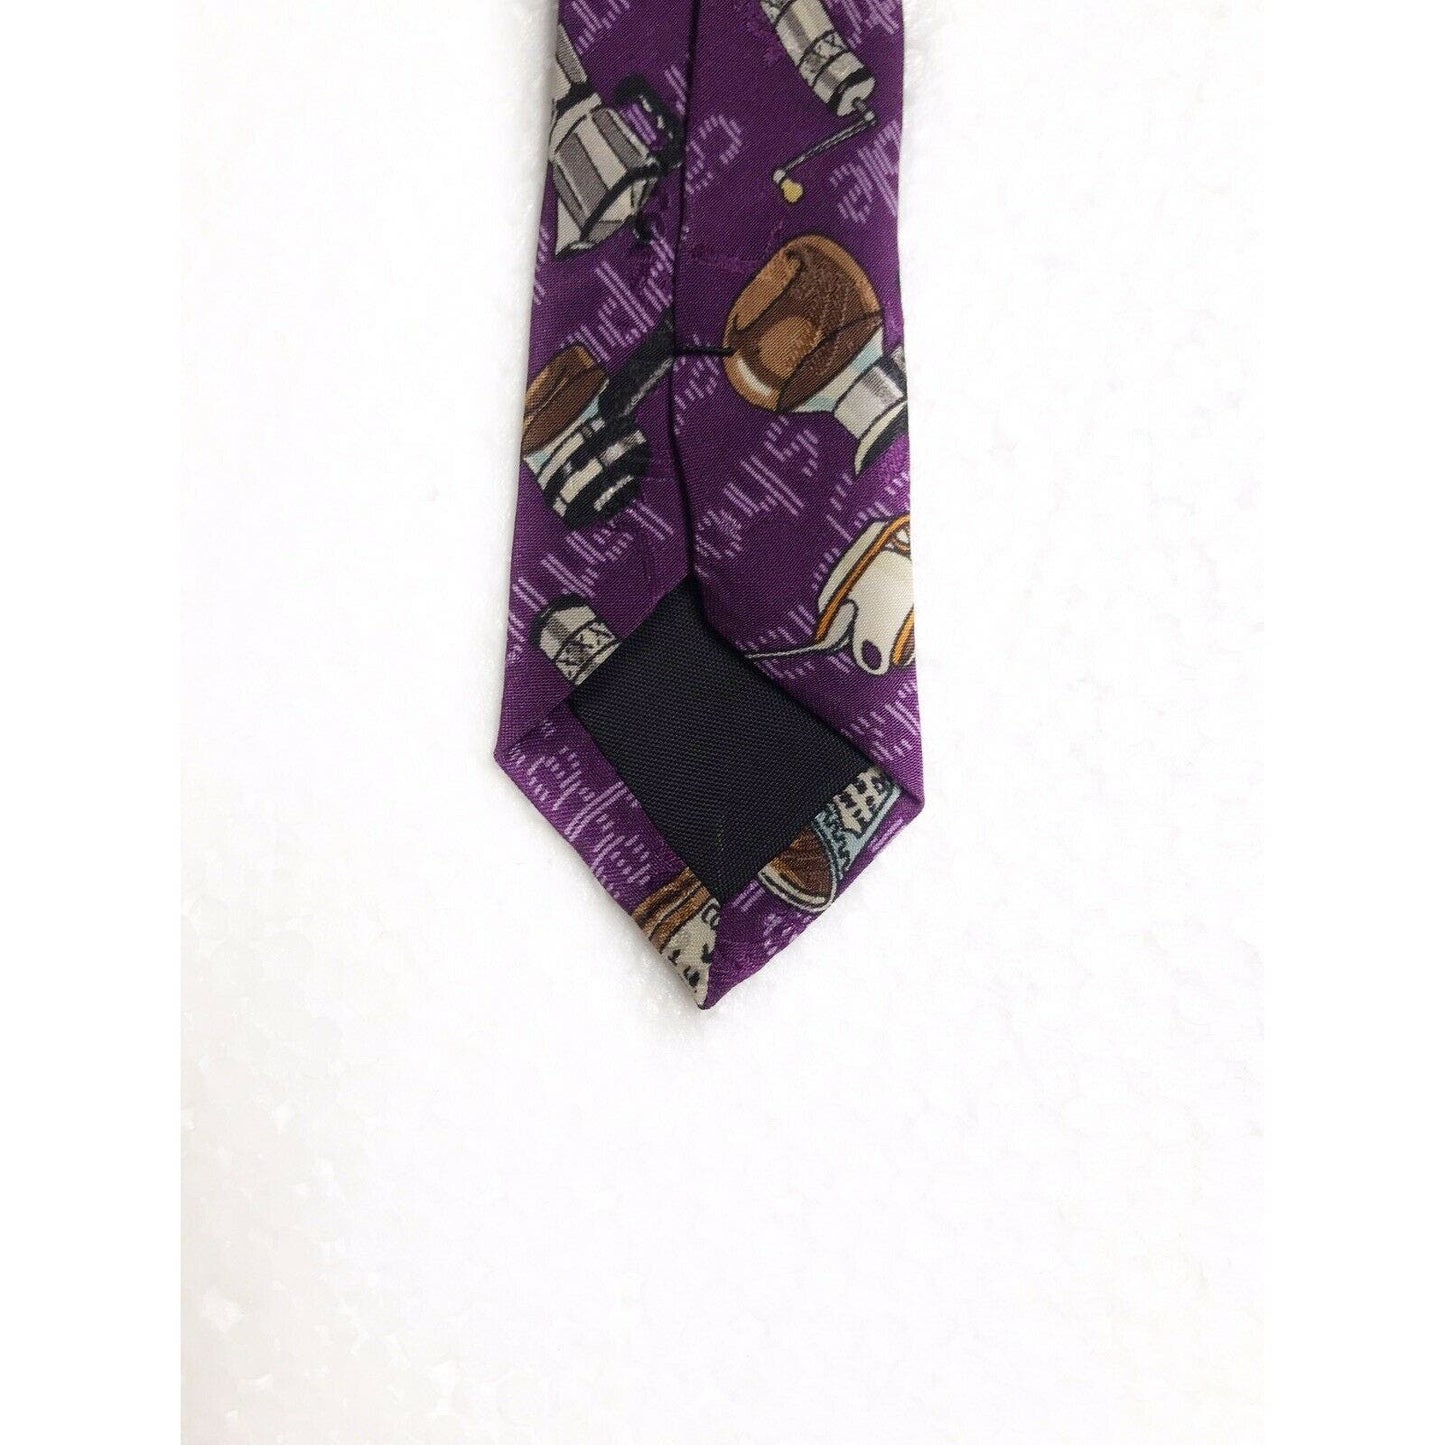 Nicole Miller Coffee Cappecino Americano Decaf Vintage Novelty Tie Necktie Silk